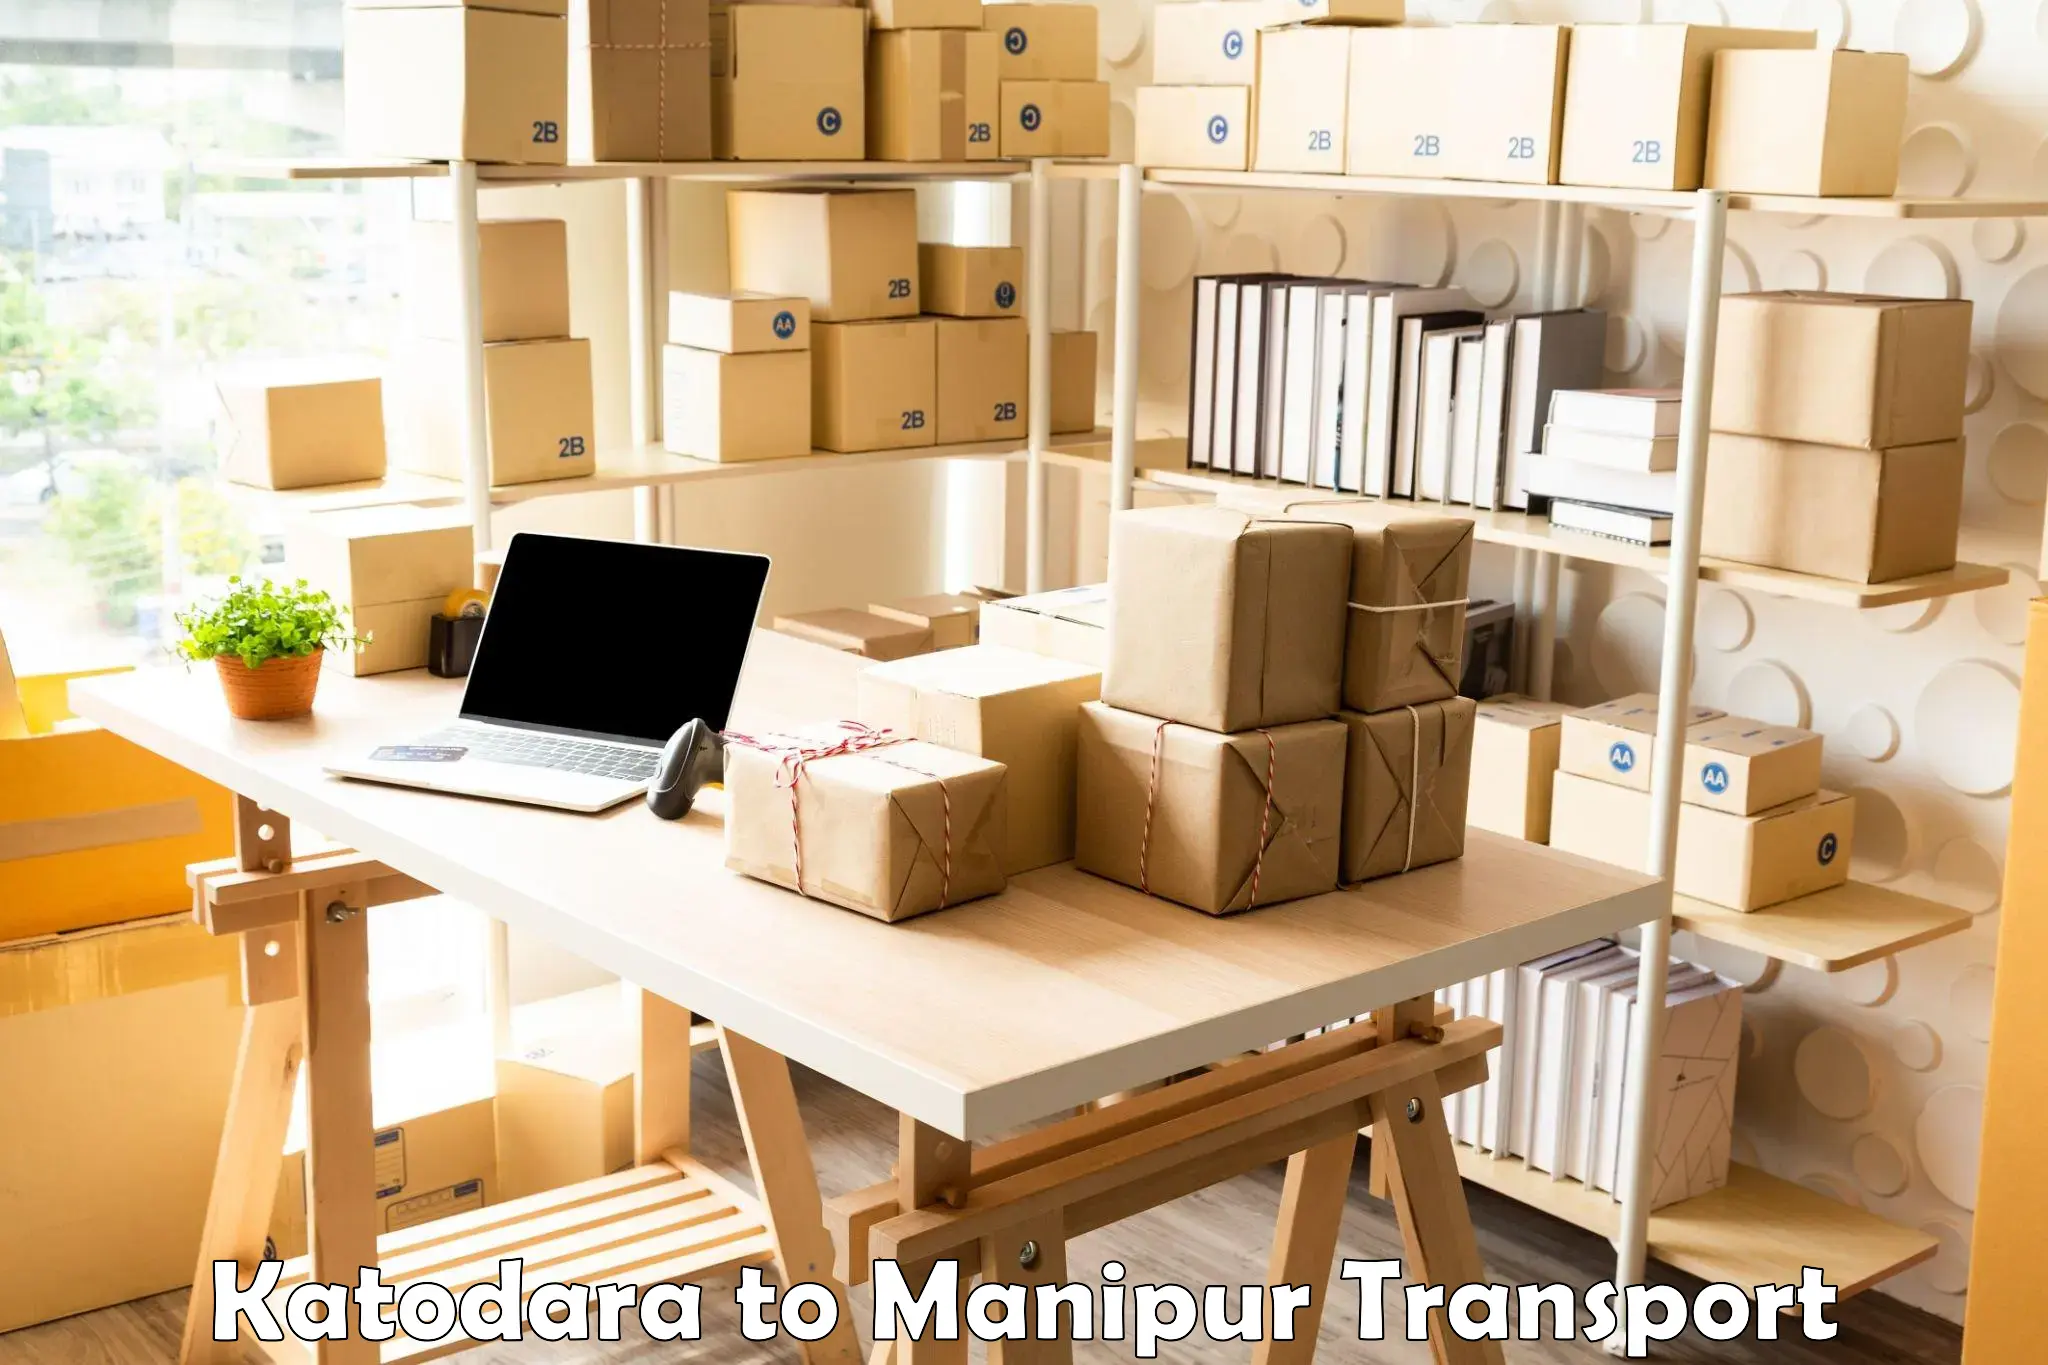 Furniture transport service Katodara to Manipur